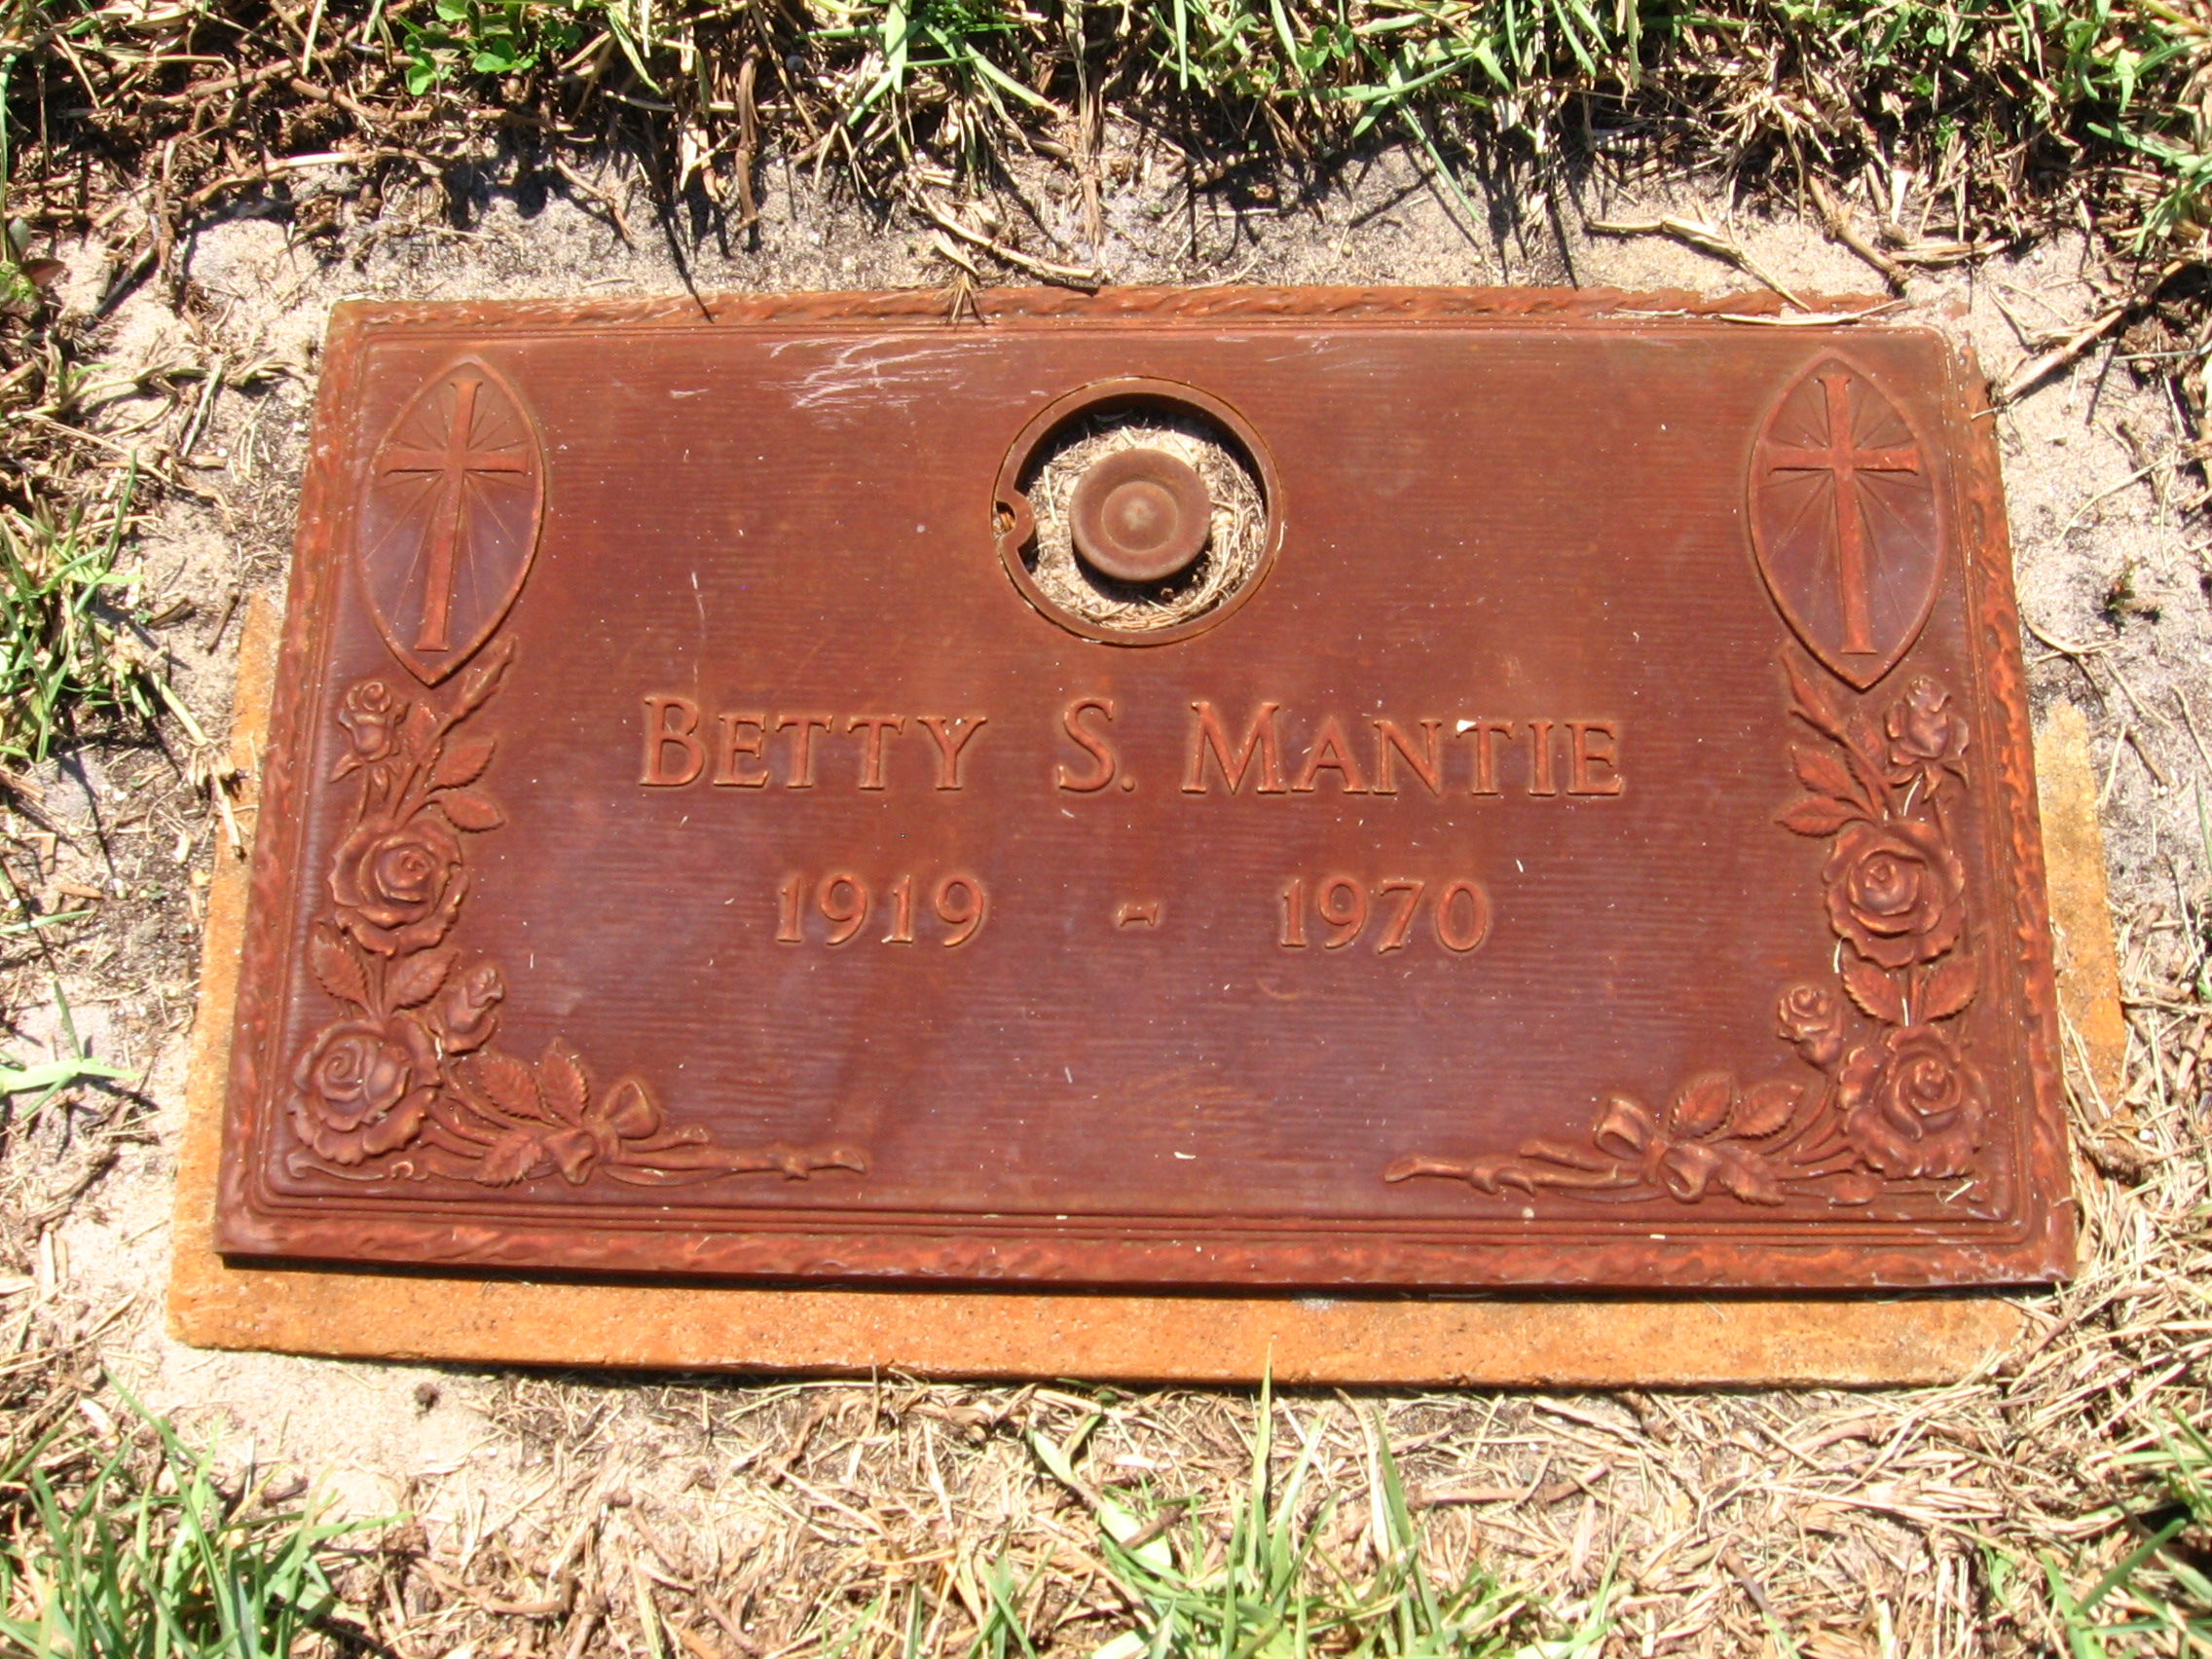 Betty S Mantie